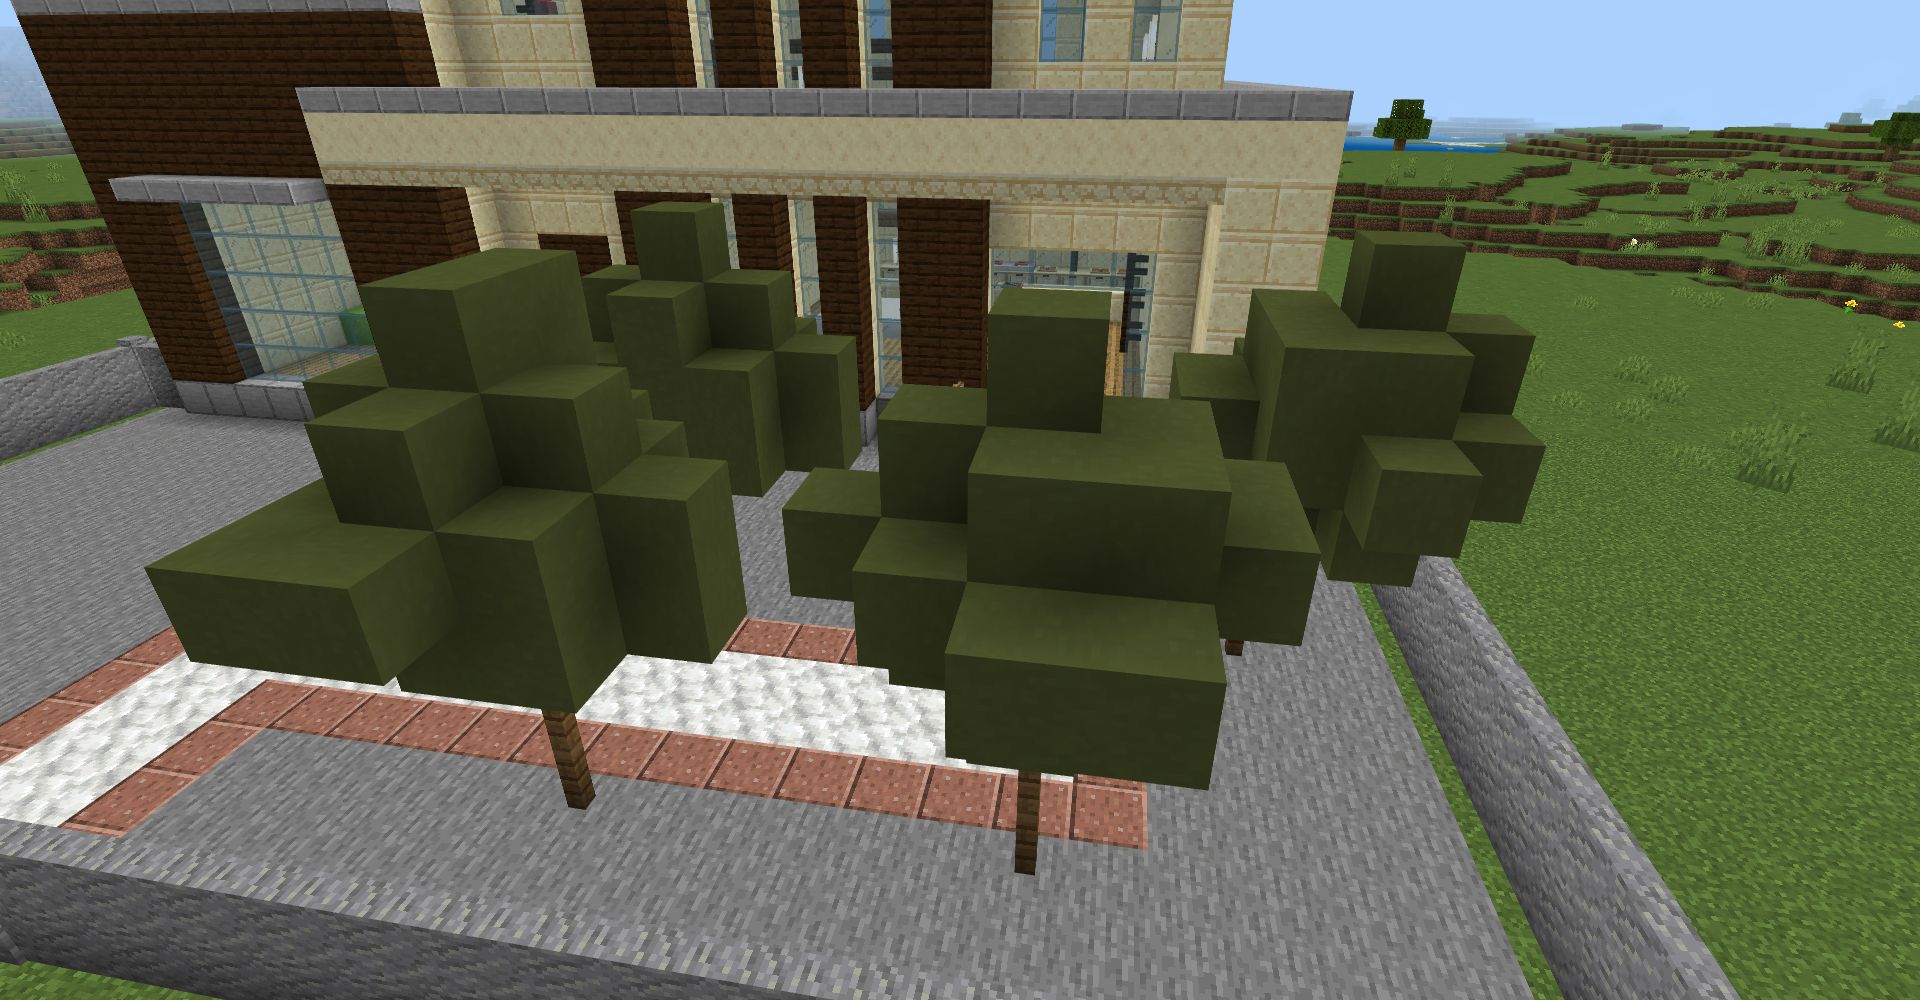 「緑色のコンクリート」を木のような形に設置